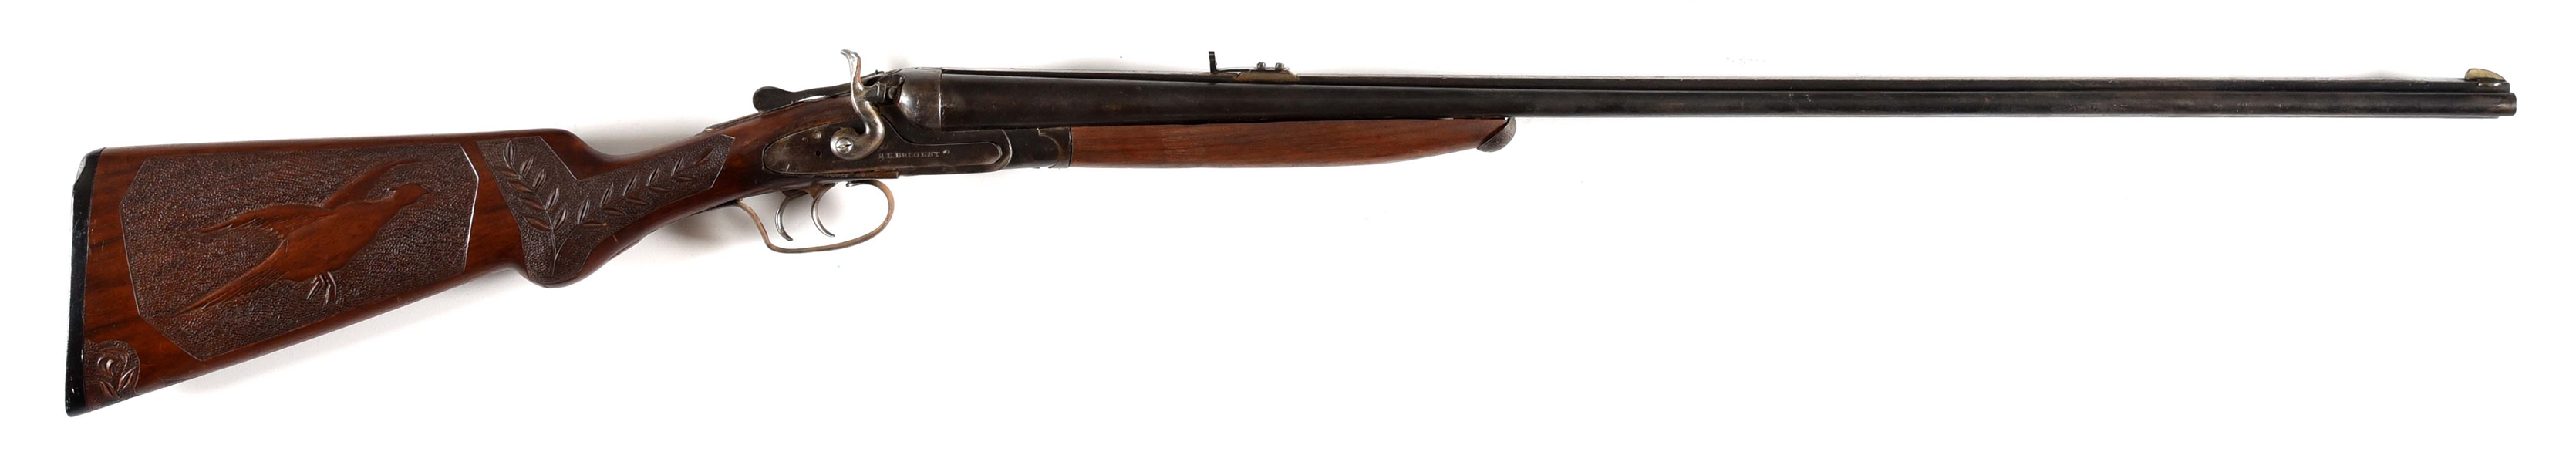 (C) A.E. BREGENT CAPE GUN IN 12 GAUGE AND 9MM RIFLE.	